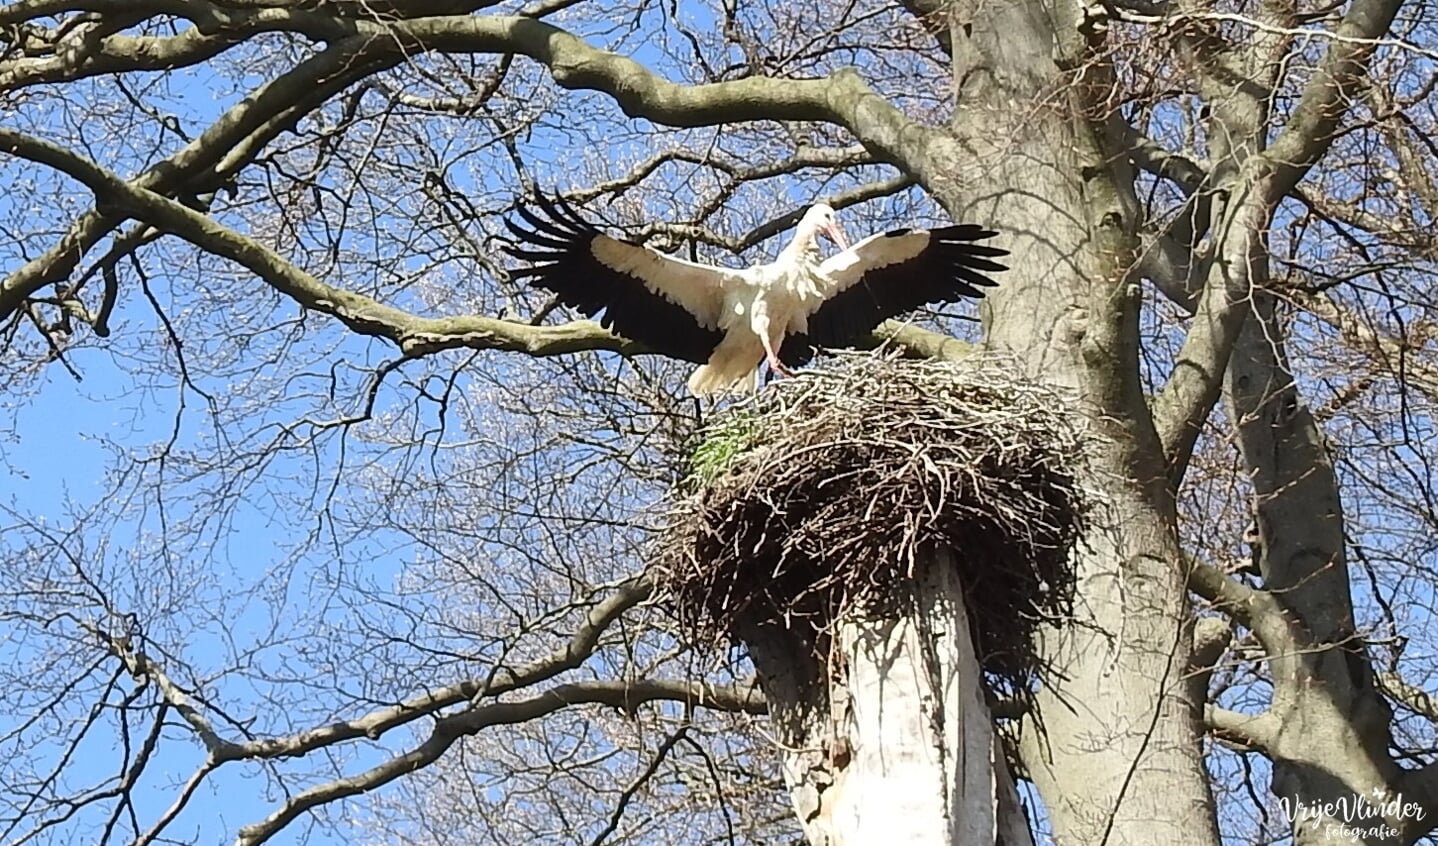 De overgebleven ooievaar strijkt neer op het nest.